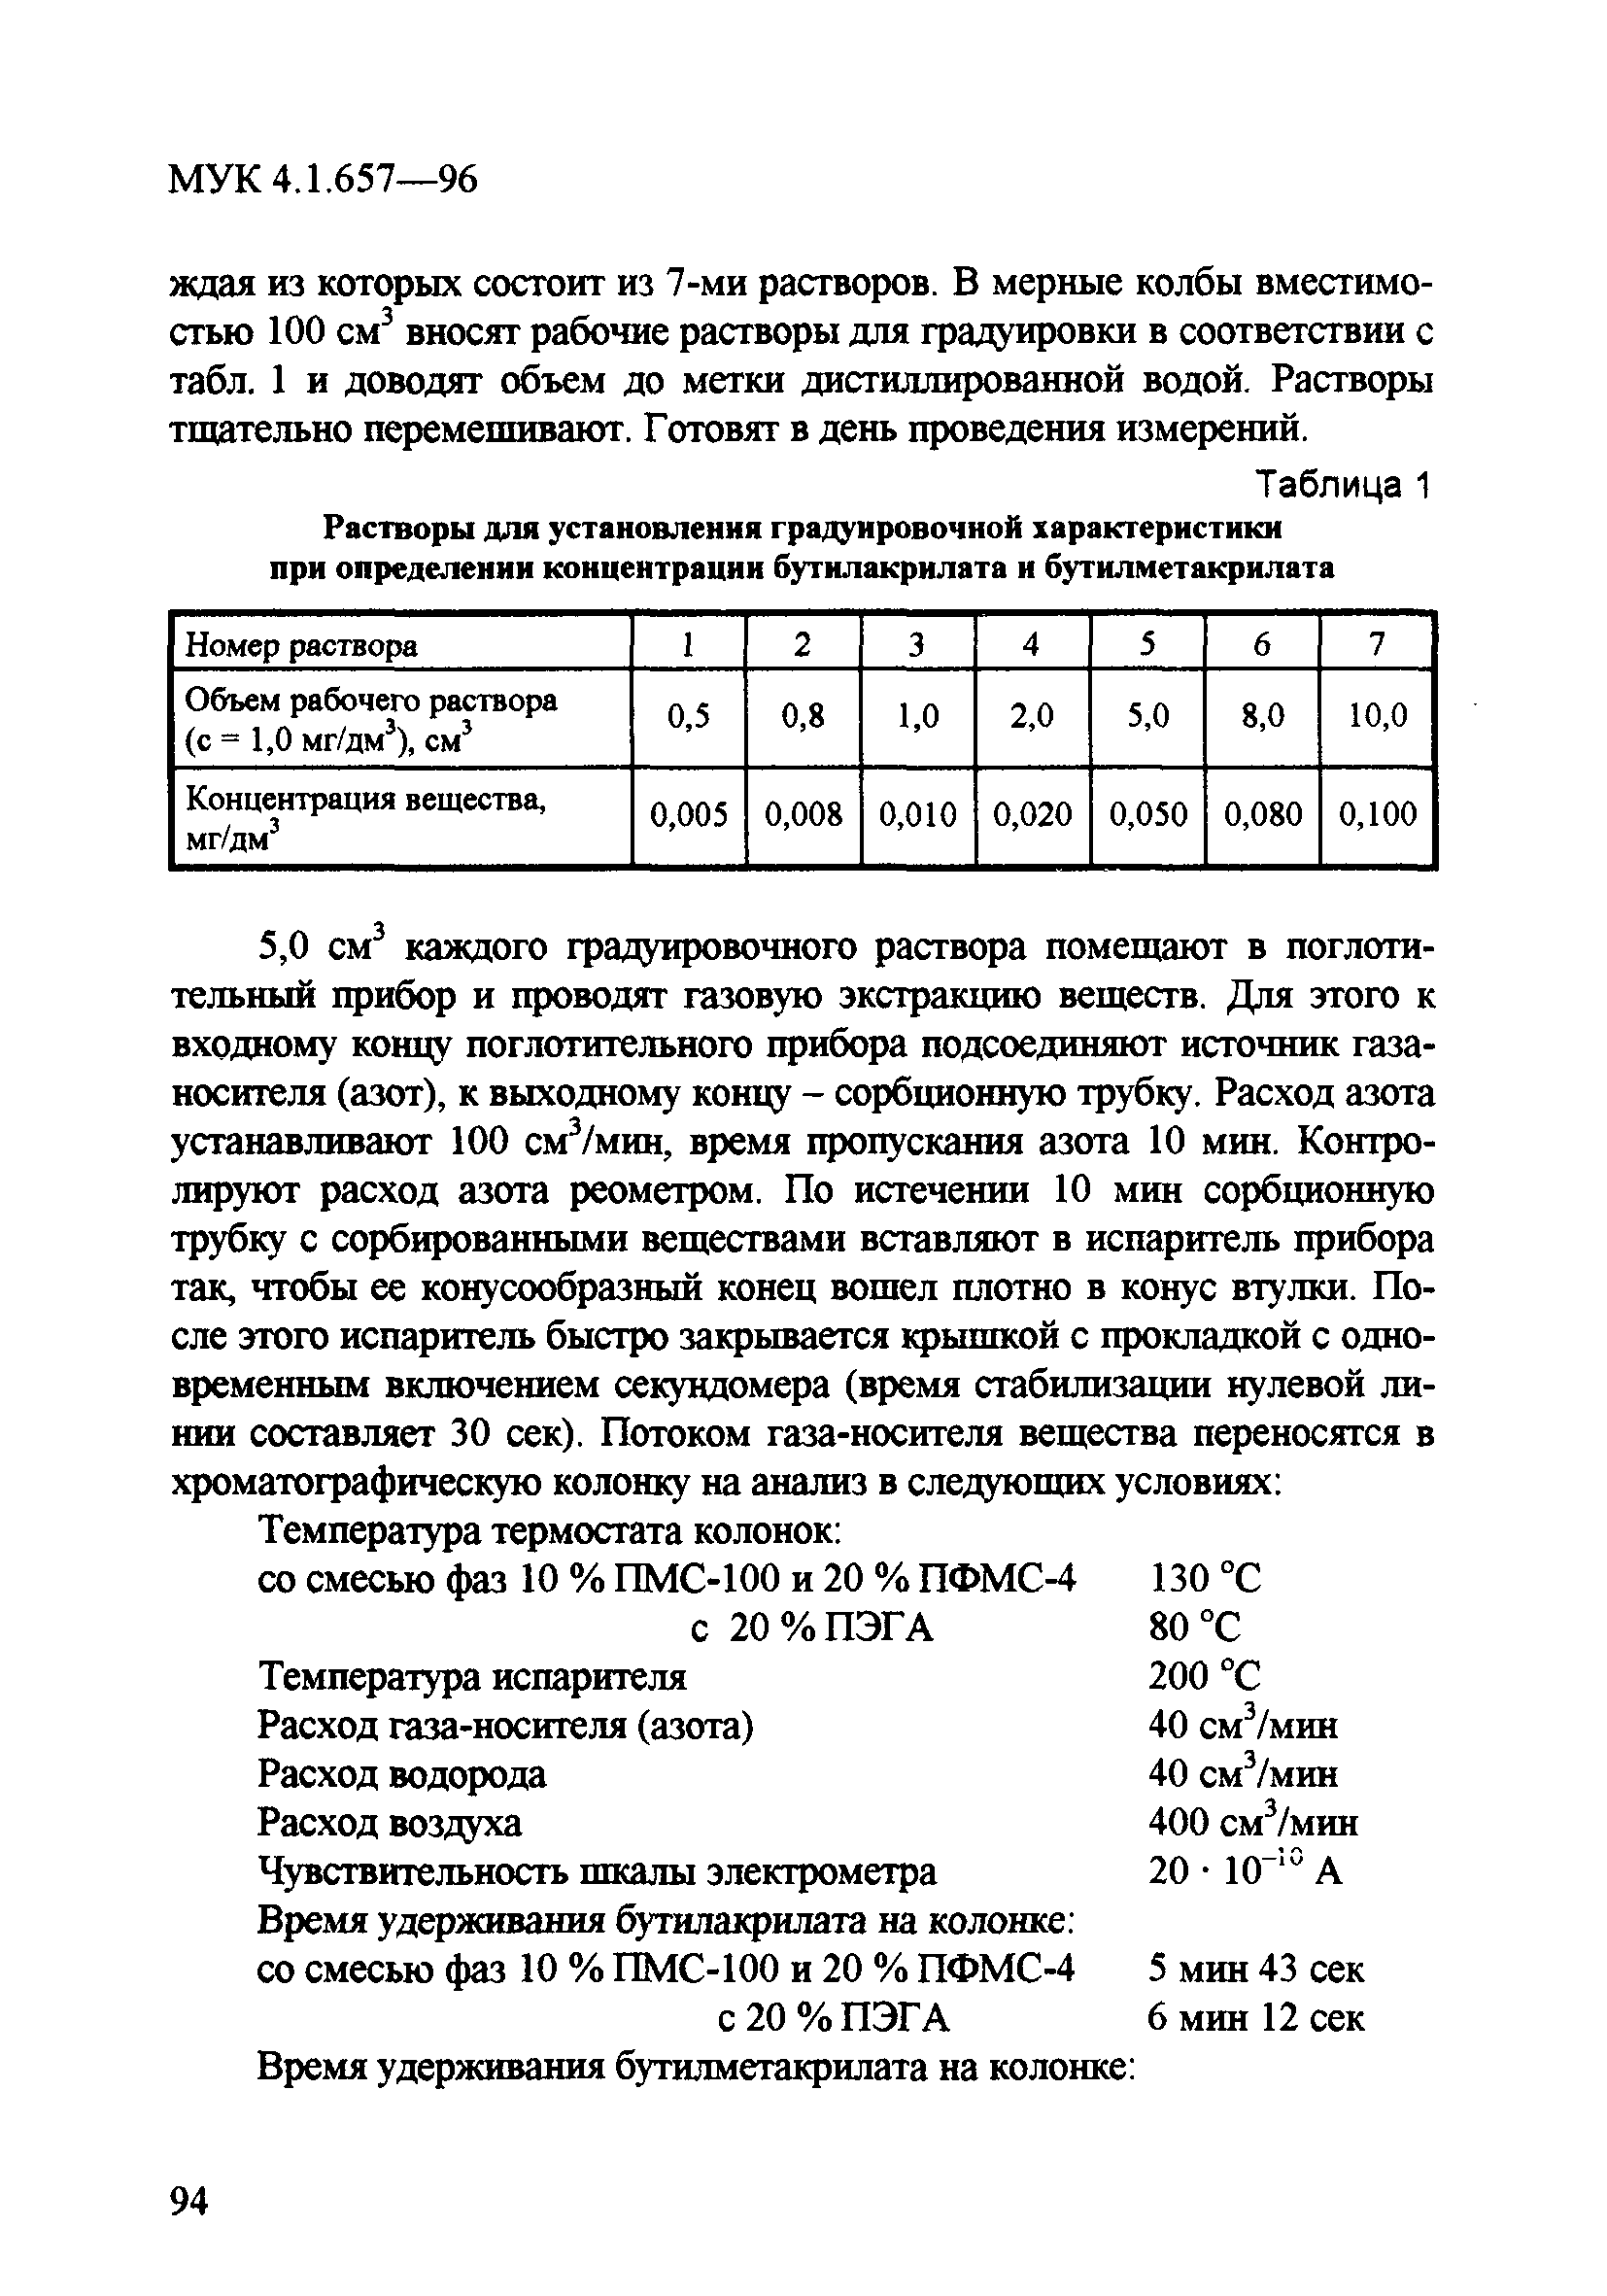 МУК 4.1.657-96